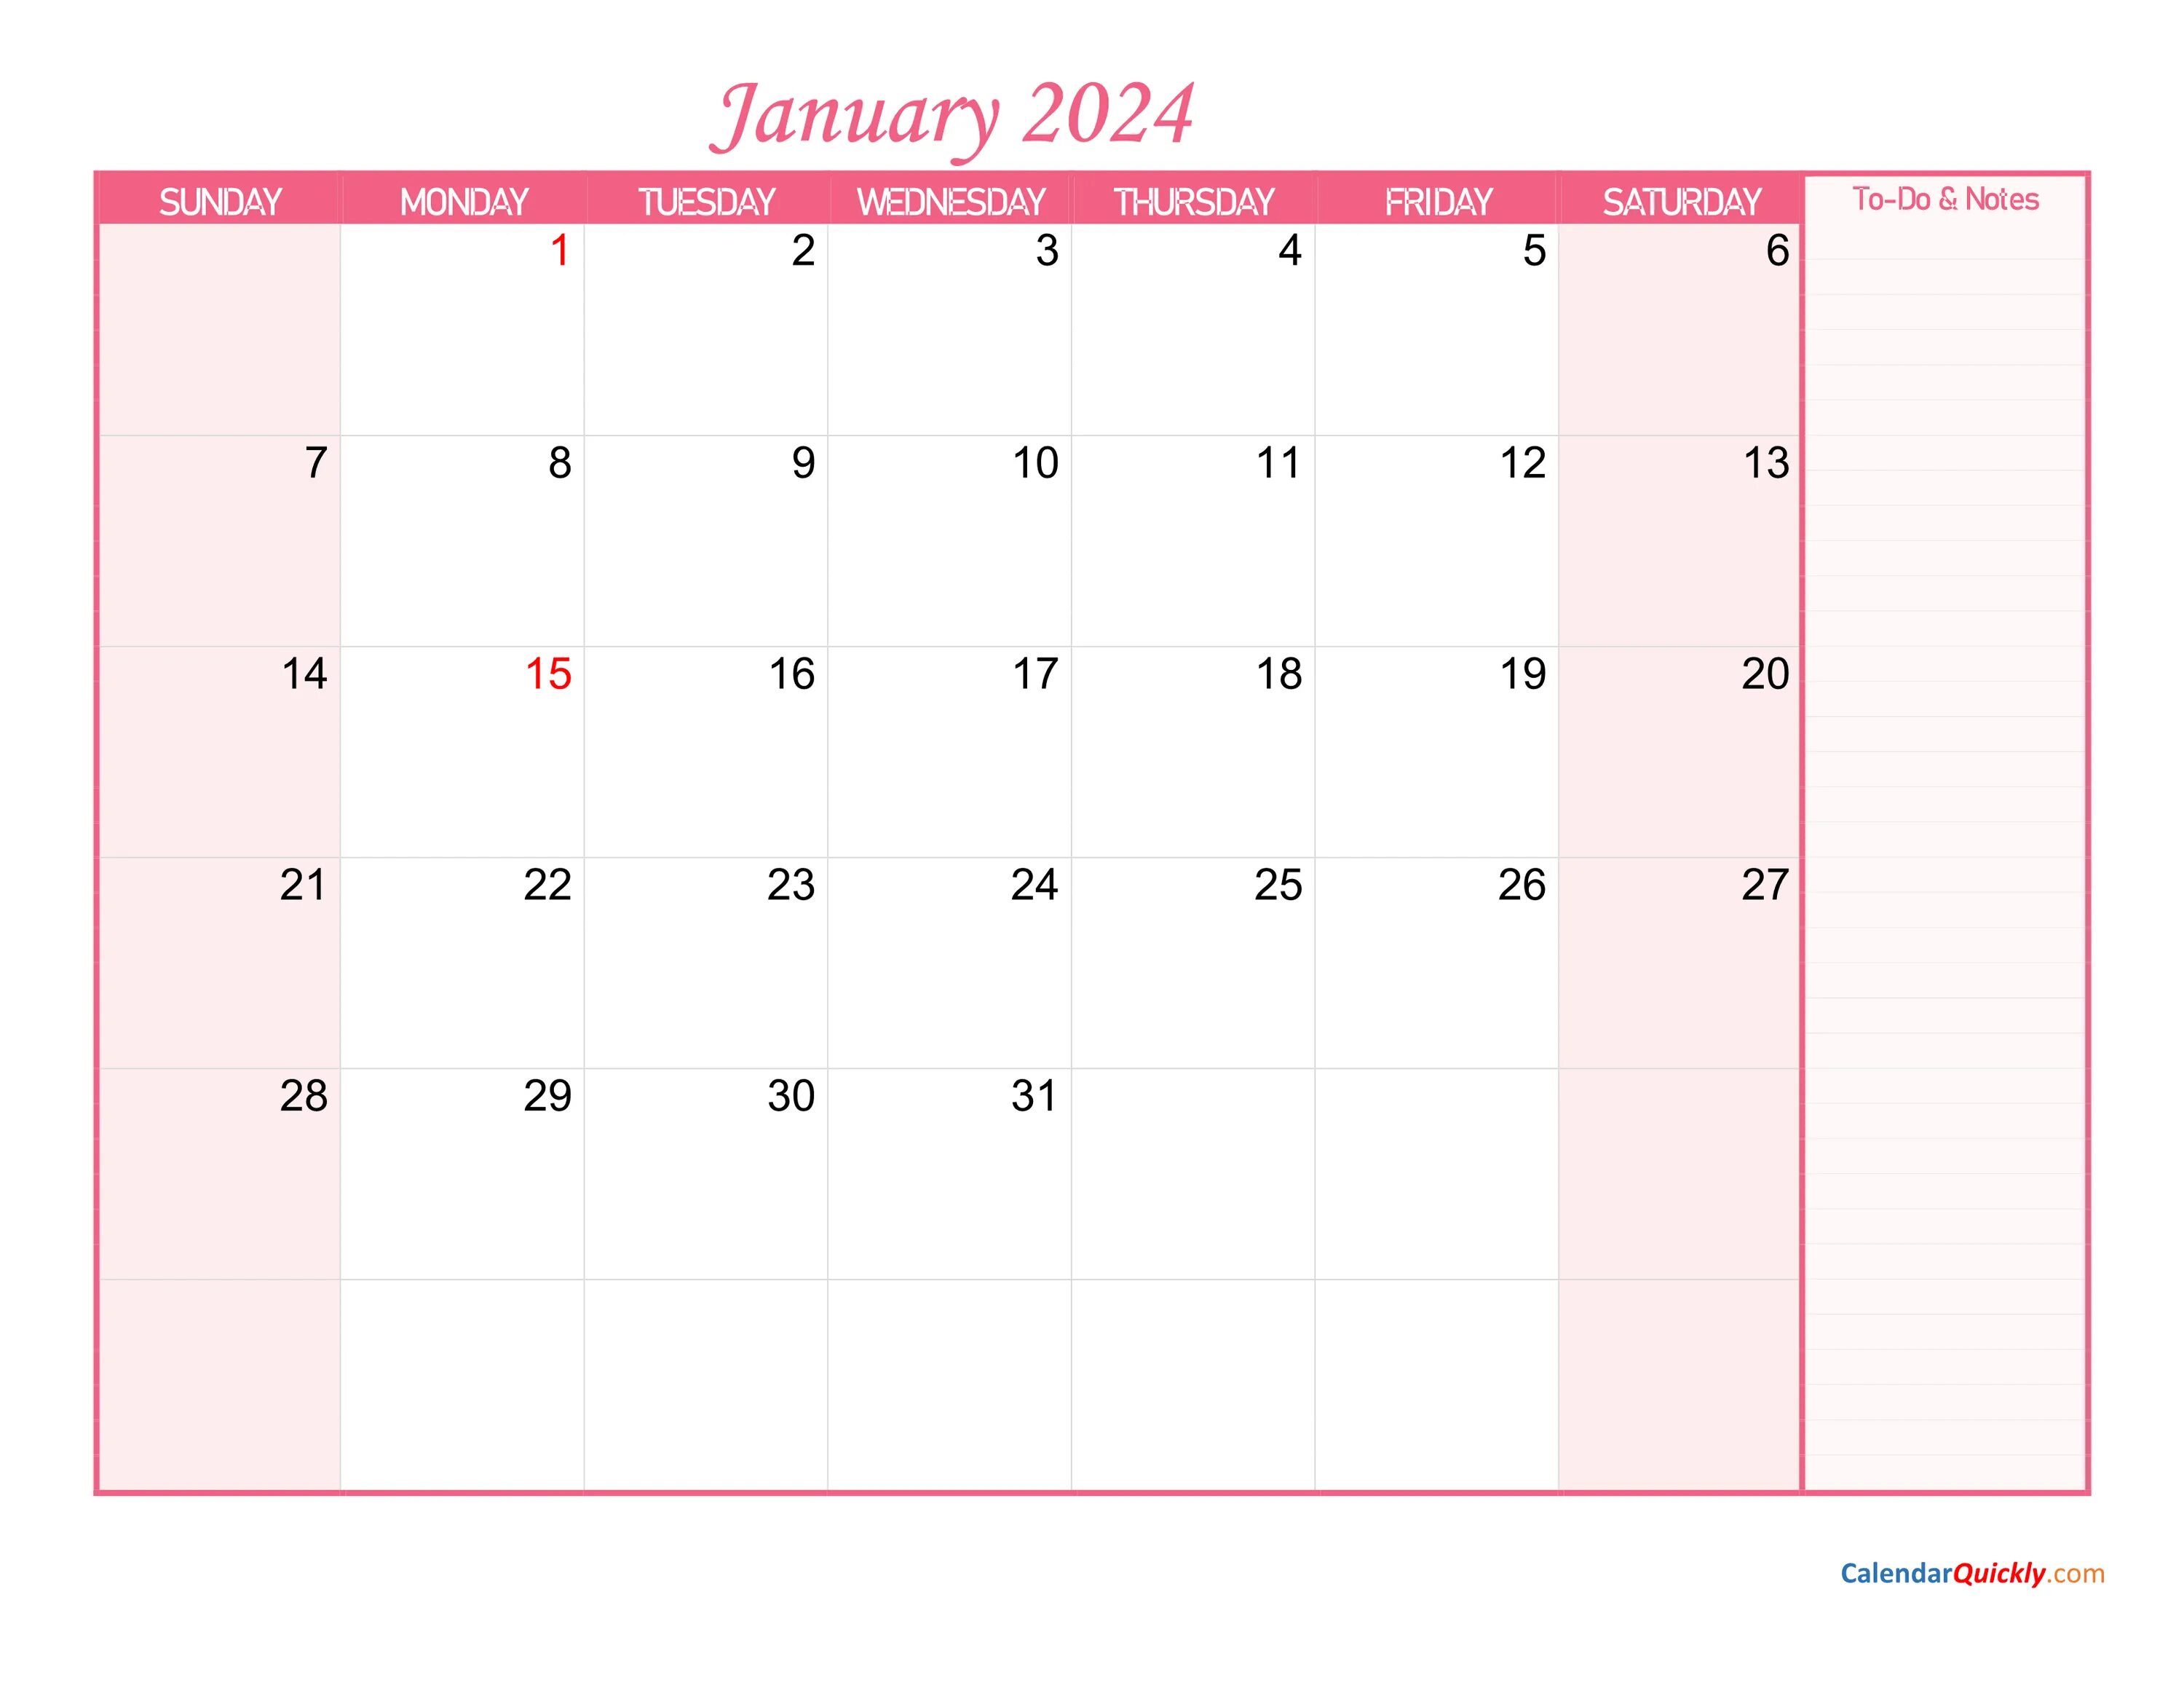 Календарь февраль март 2024 распечатать. Календарь февраль 2022. Календарь 2022 с заметками. Календарь март 2022. Календарь апрель 2022.